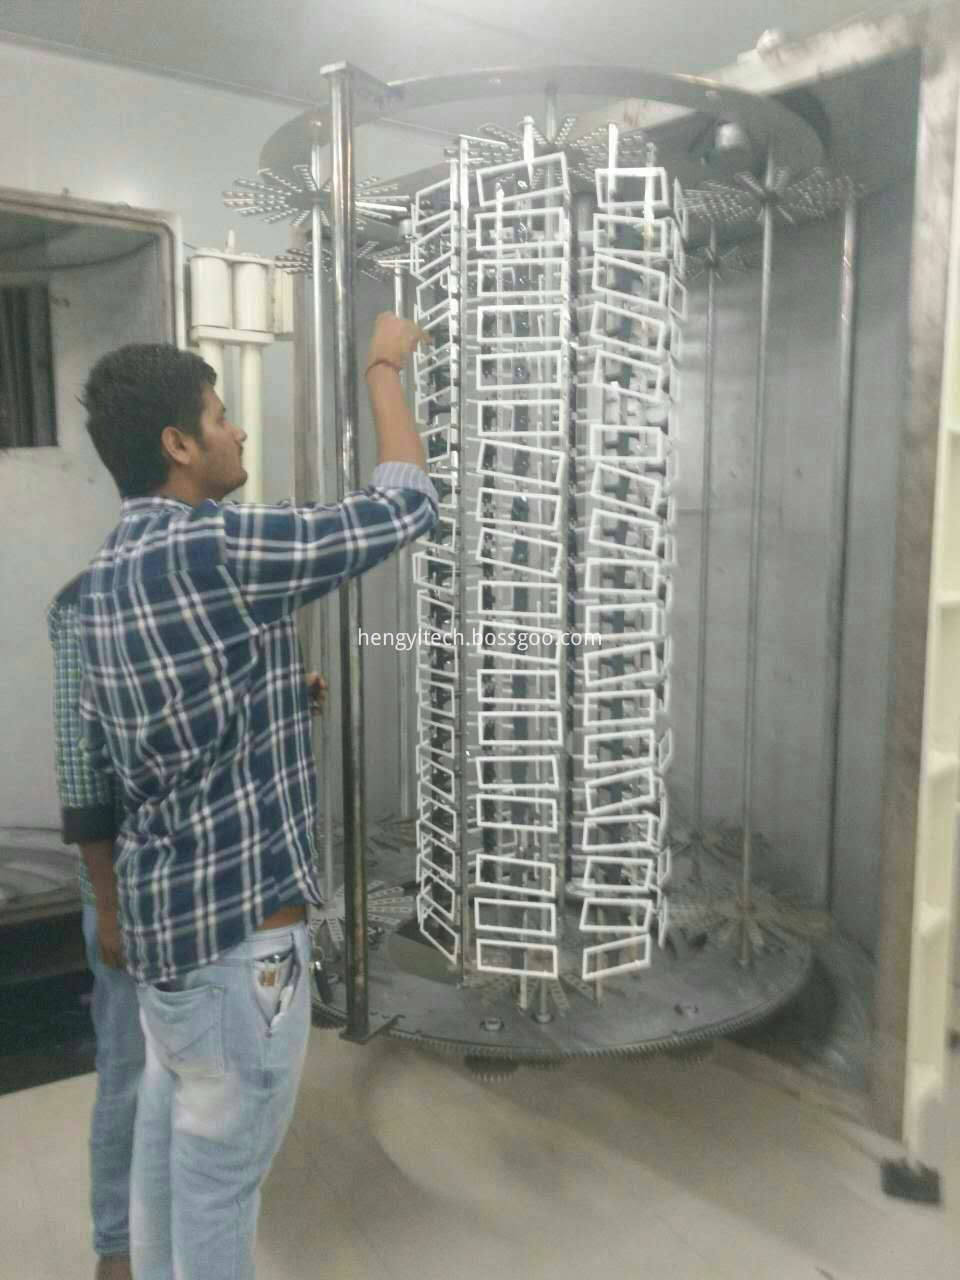 PVD vacuum coating machine